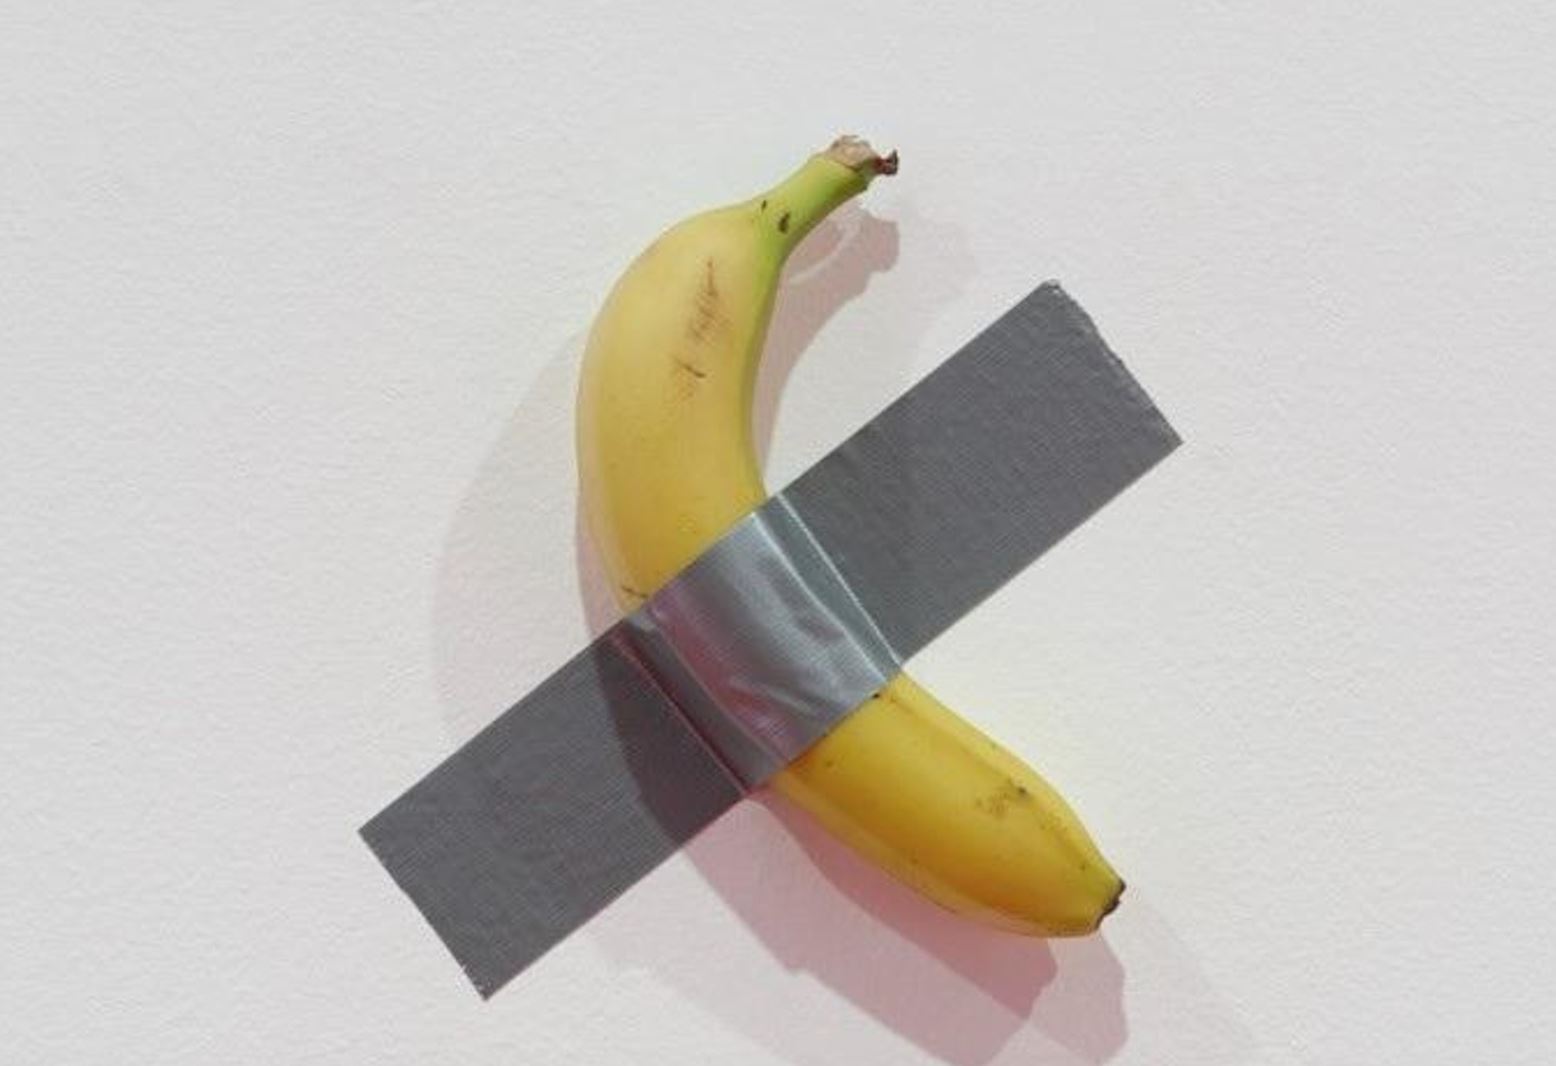 68万「香蕉」艺术品遭吃光！南韩大学生现场完食蕉皮贴回墙　辩完整事件爆料"